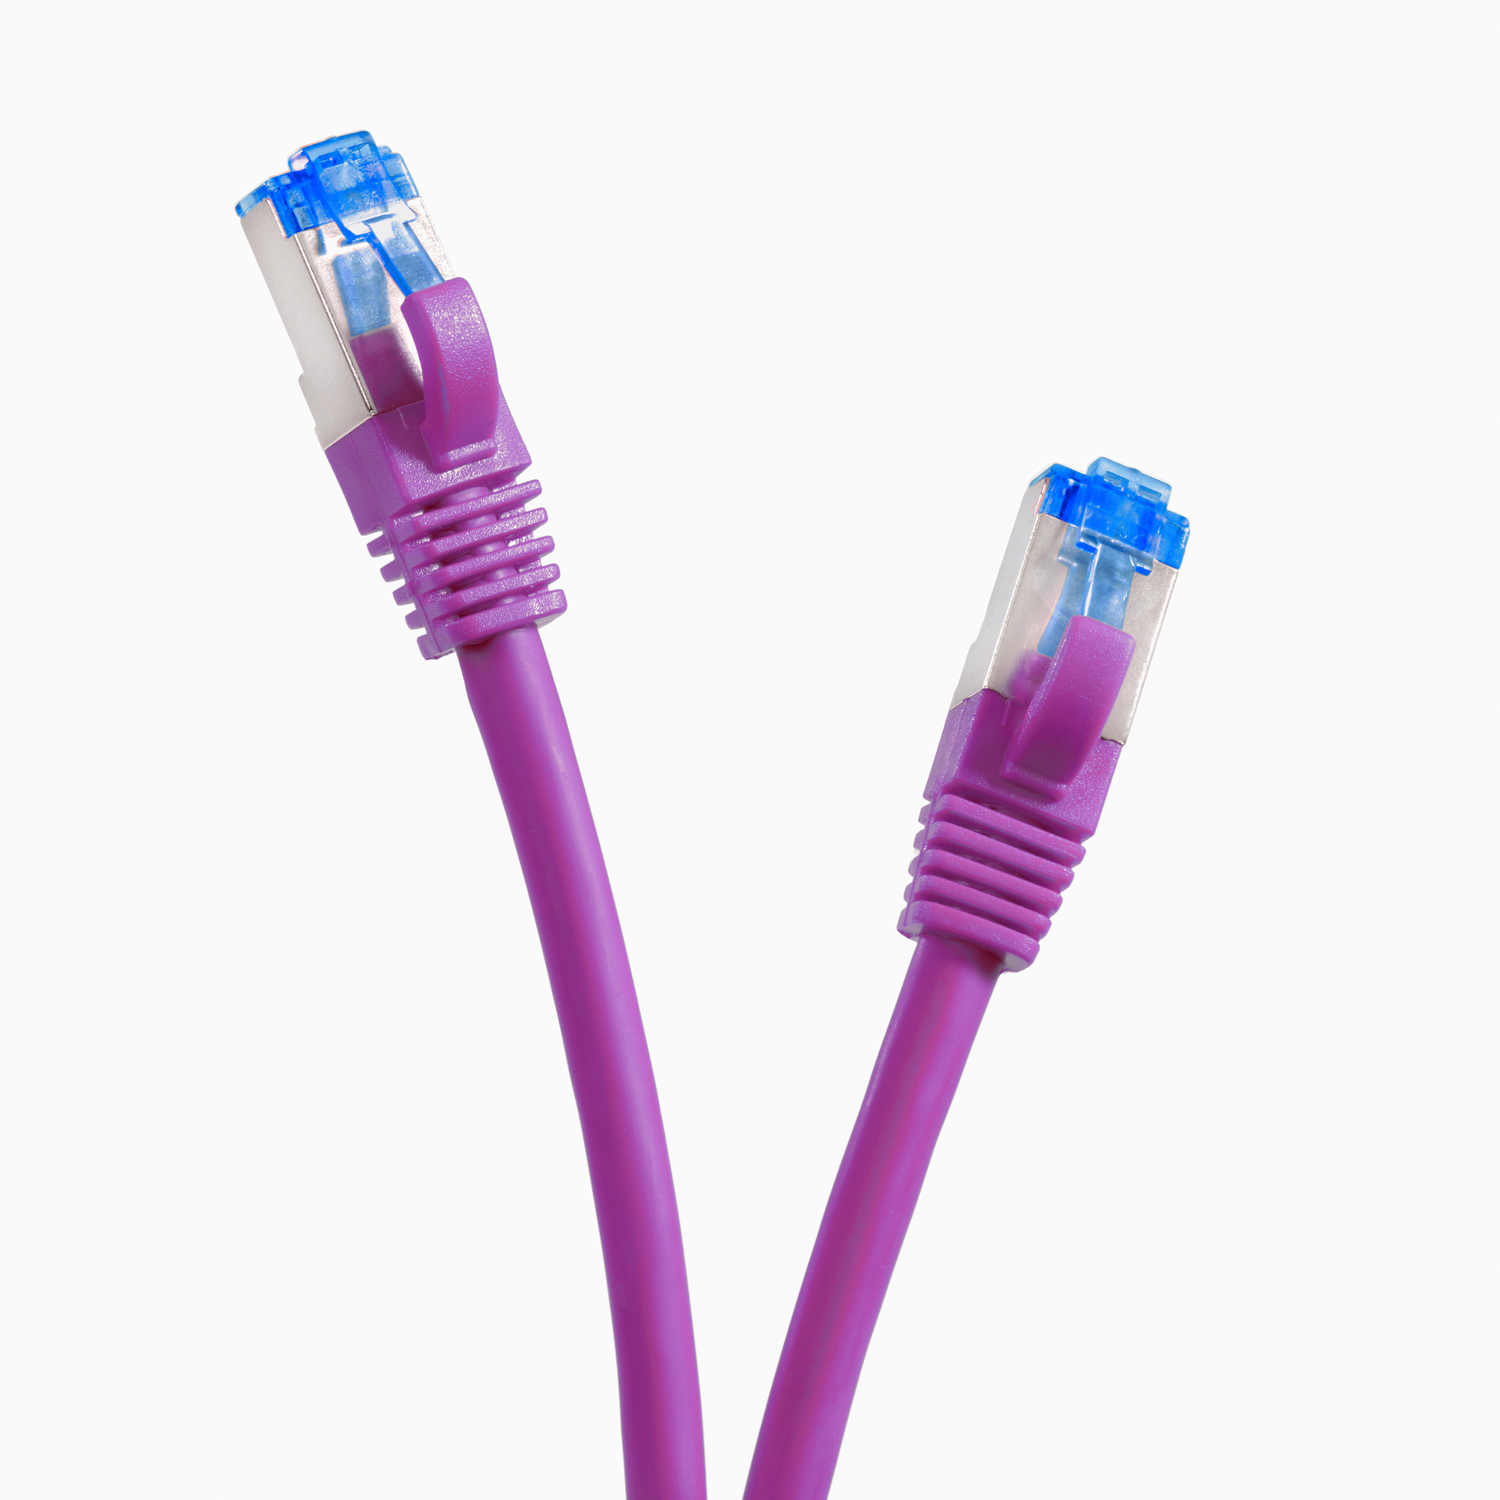 TPFNET 5er Pack 0,25m Patchkabel 10GBit, / m Netzwerkkabel Netzwerkkabel, violett, S/FTP 0,25